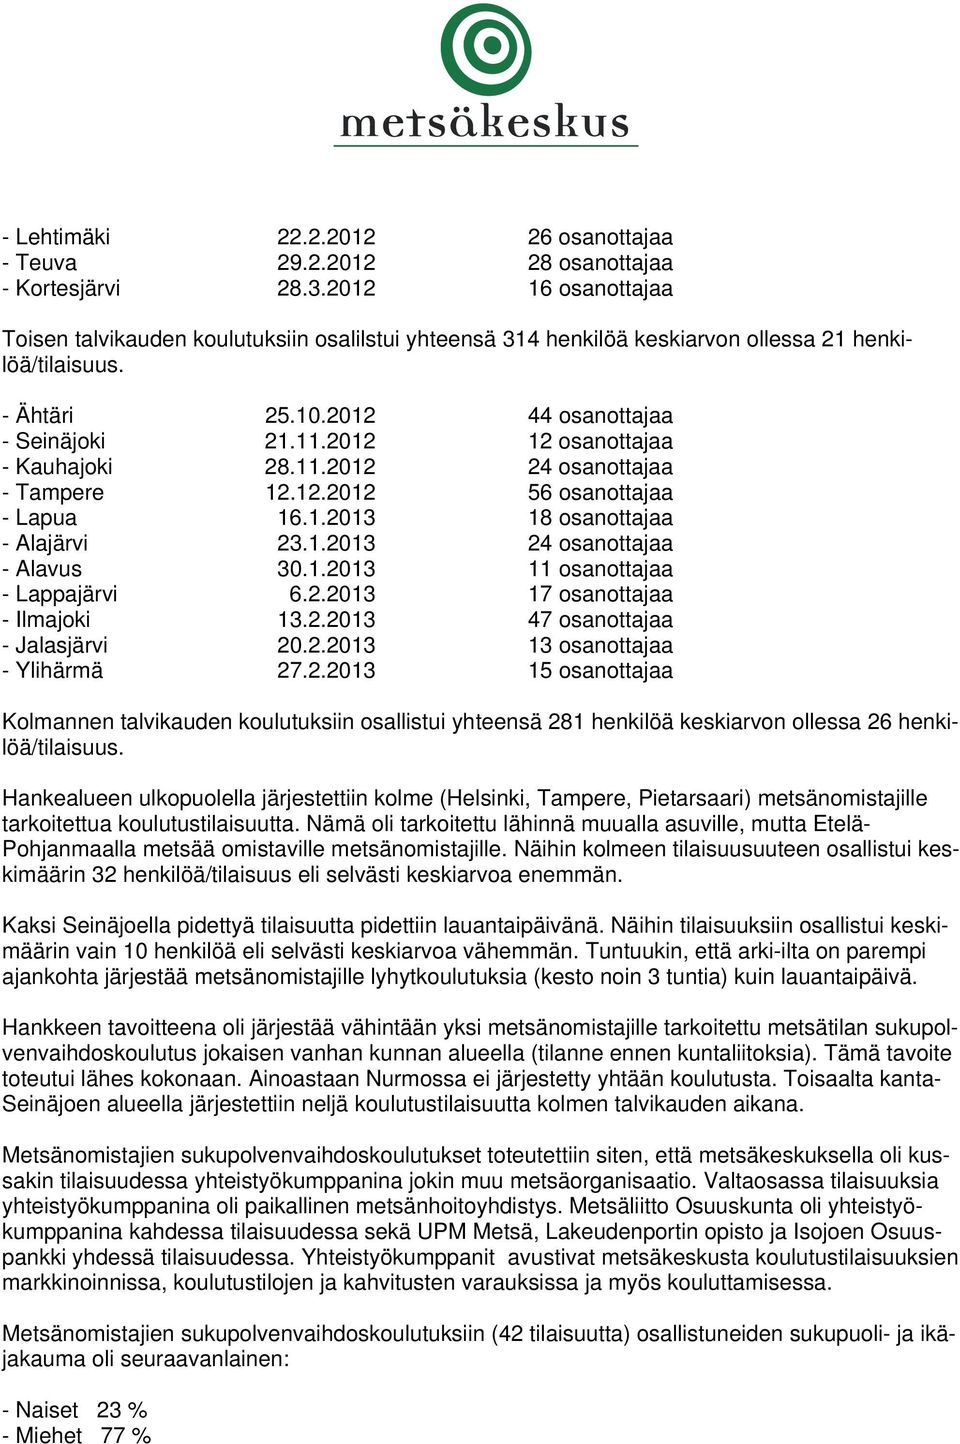 2012 12 osanottajaa - Kauhajoki 28.11.2012 24 osanottajaa - Tampere 12.12.2012 56 osanottajaa - Lapua 16.1.2013 18 osanottajaa - Alajärvi 23.1.2013 24 osanottajaa - Alavus 30.1.2013 11 osanottajaa - Lappajärvi 6.